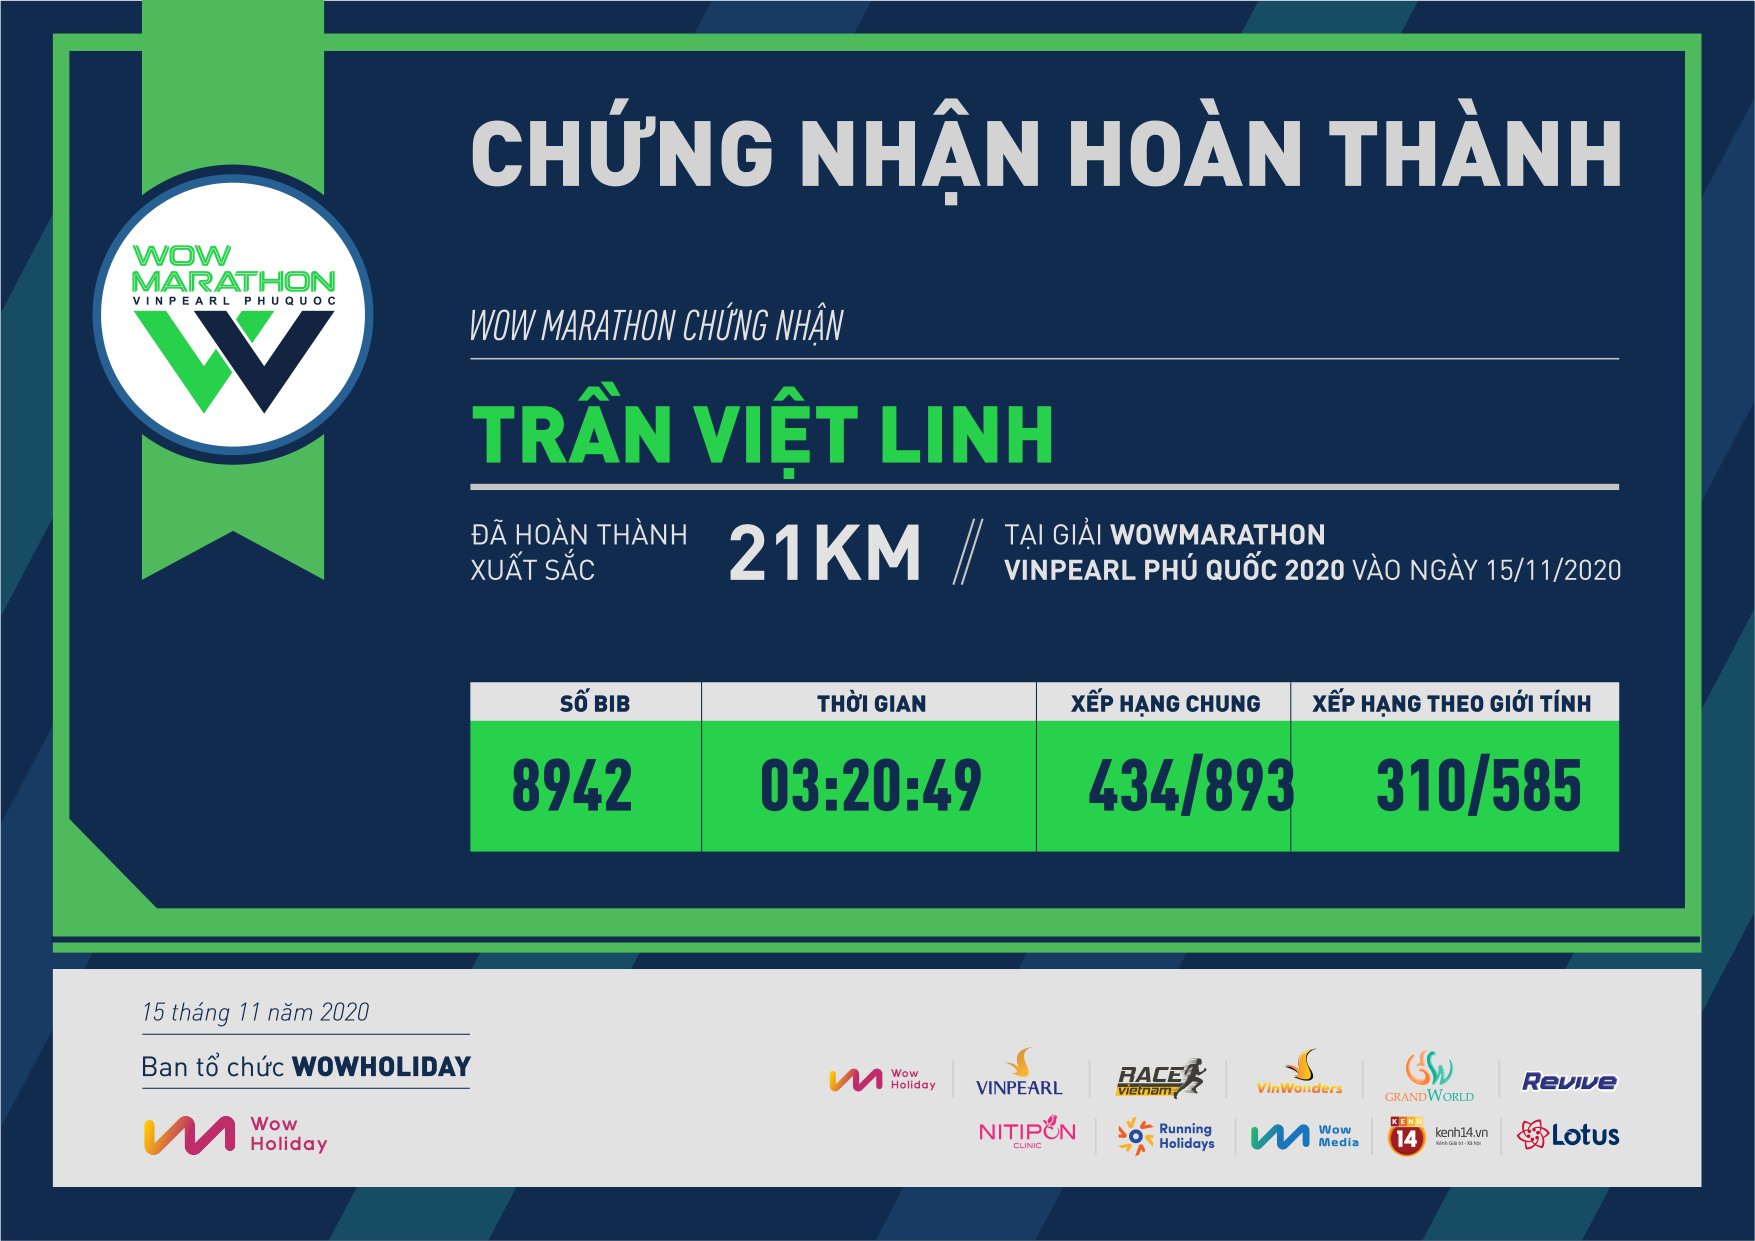 8942 - Trần Việt Linh